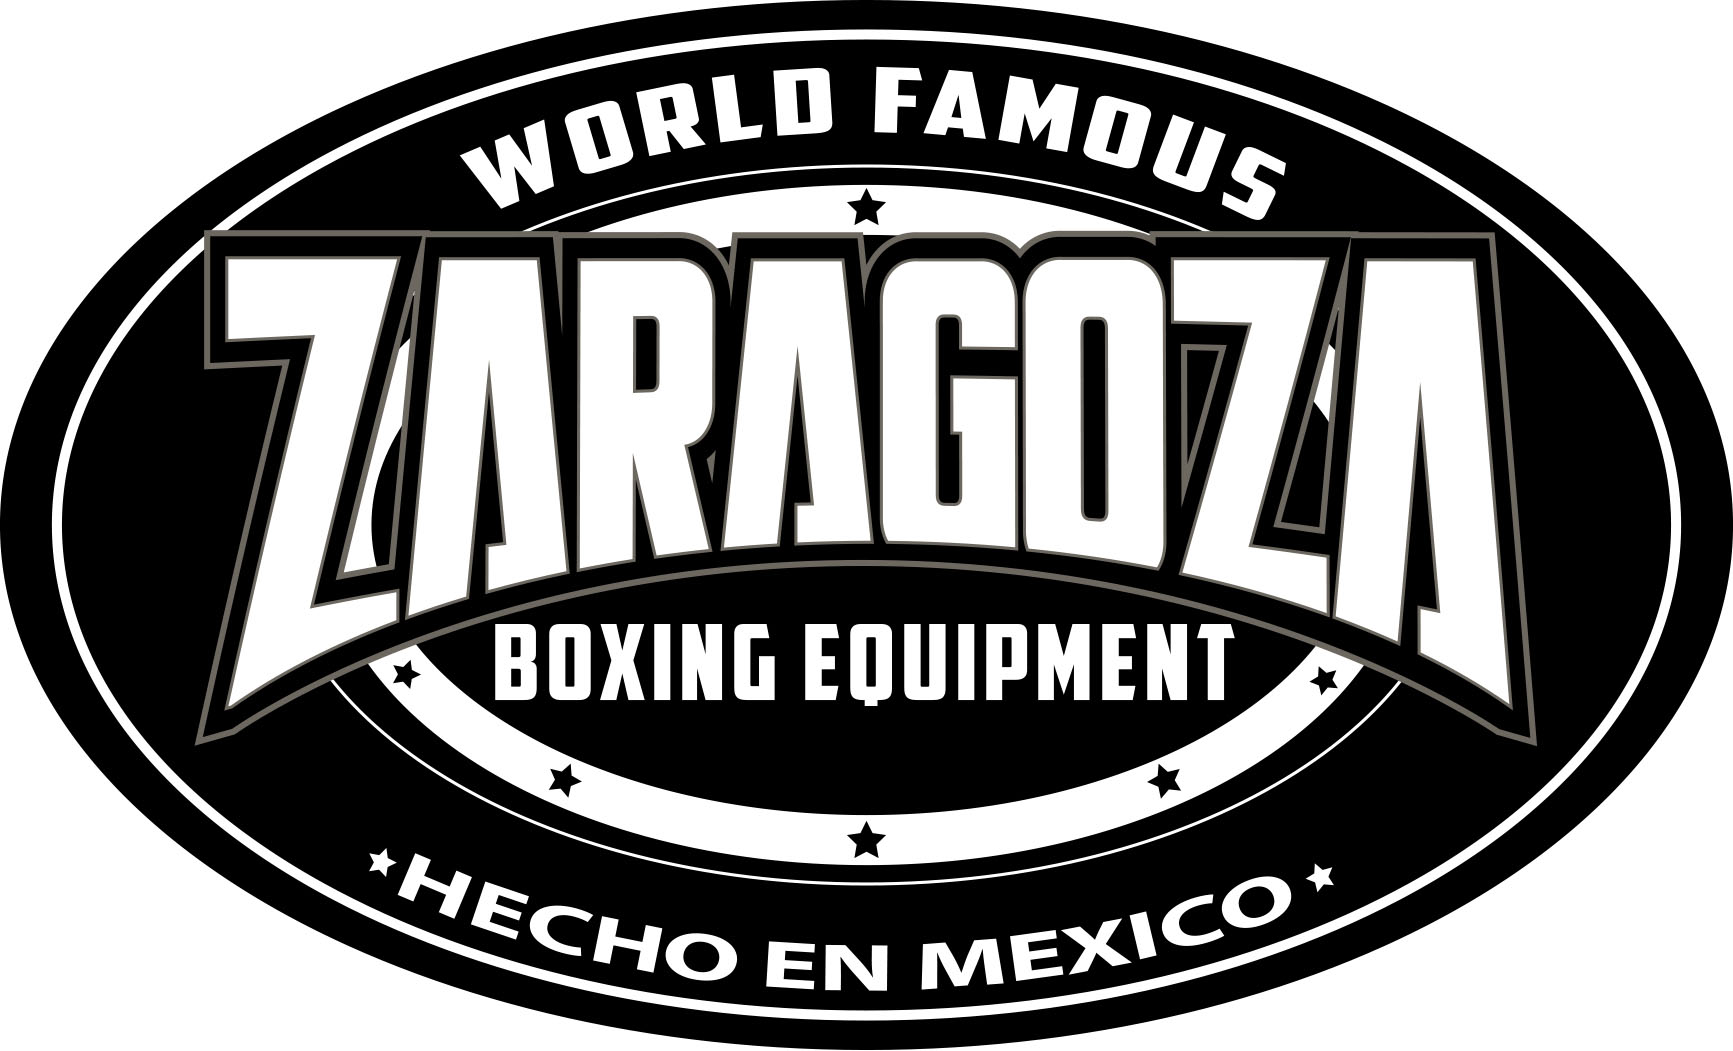 Zaragoza Equipment logo.JPG